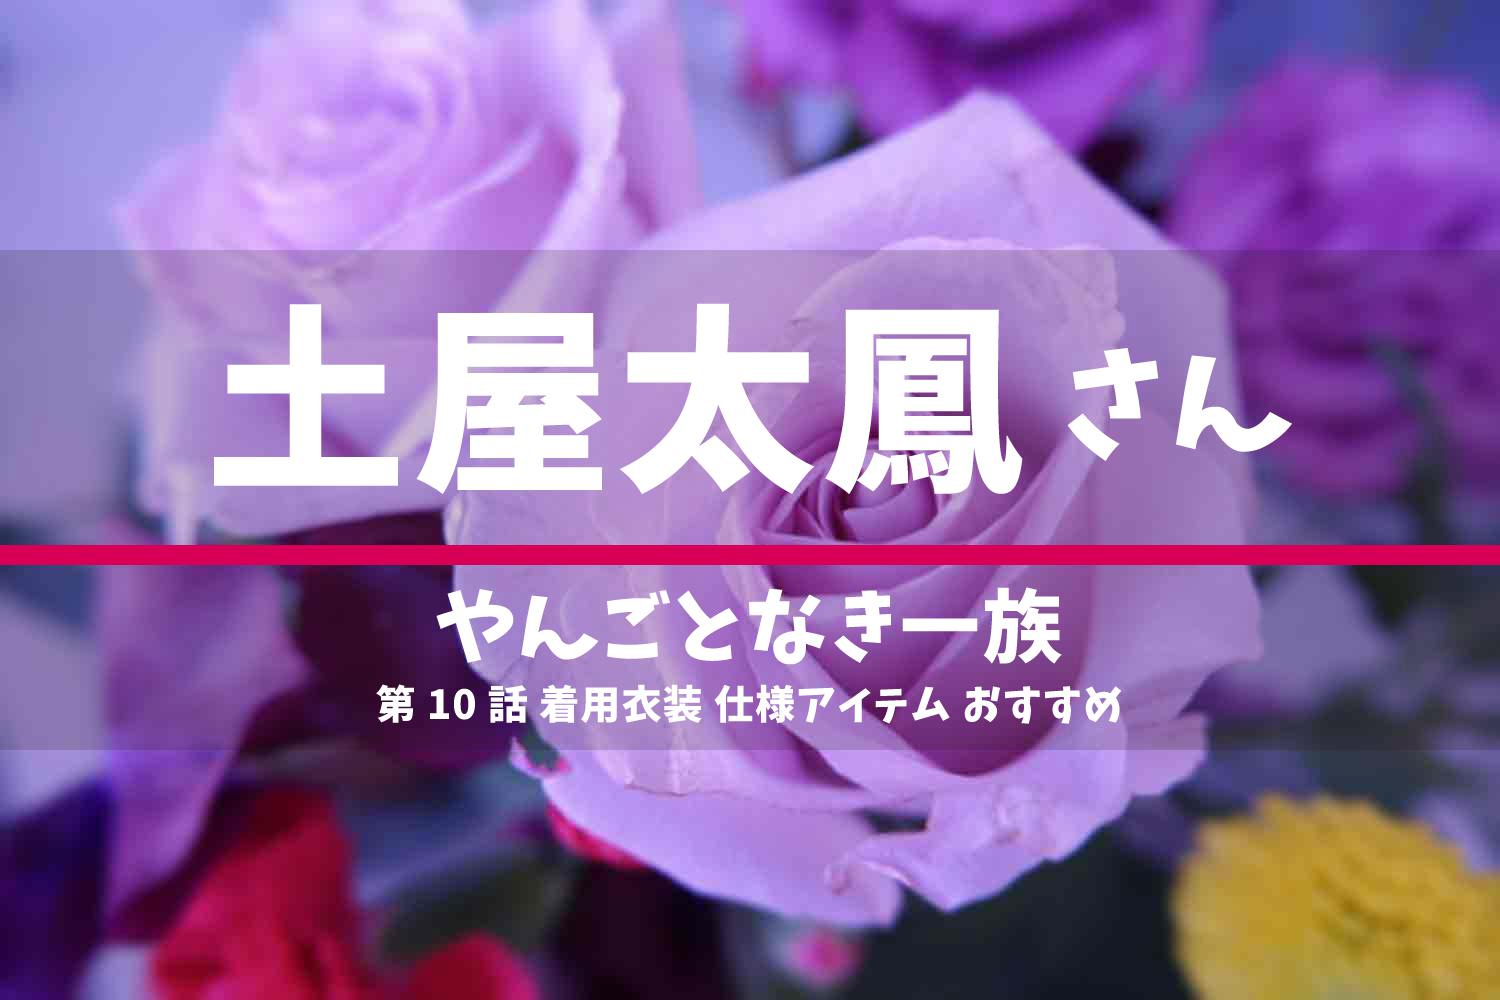 やんごとなき一族 土屋太鳳さん ドラマ 衣装 2022年6月23日放送